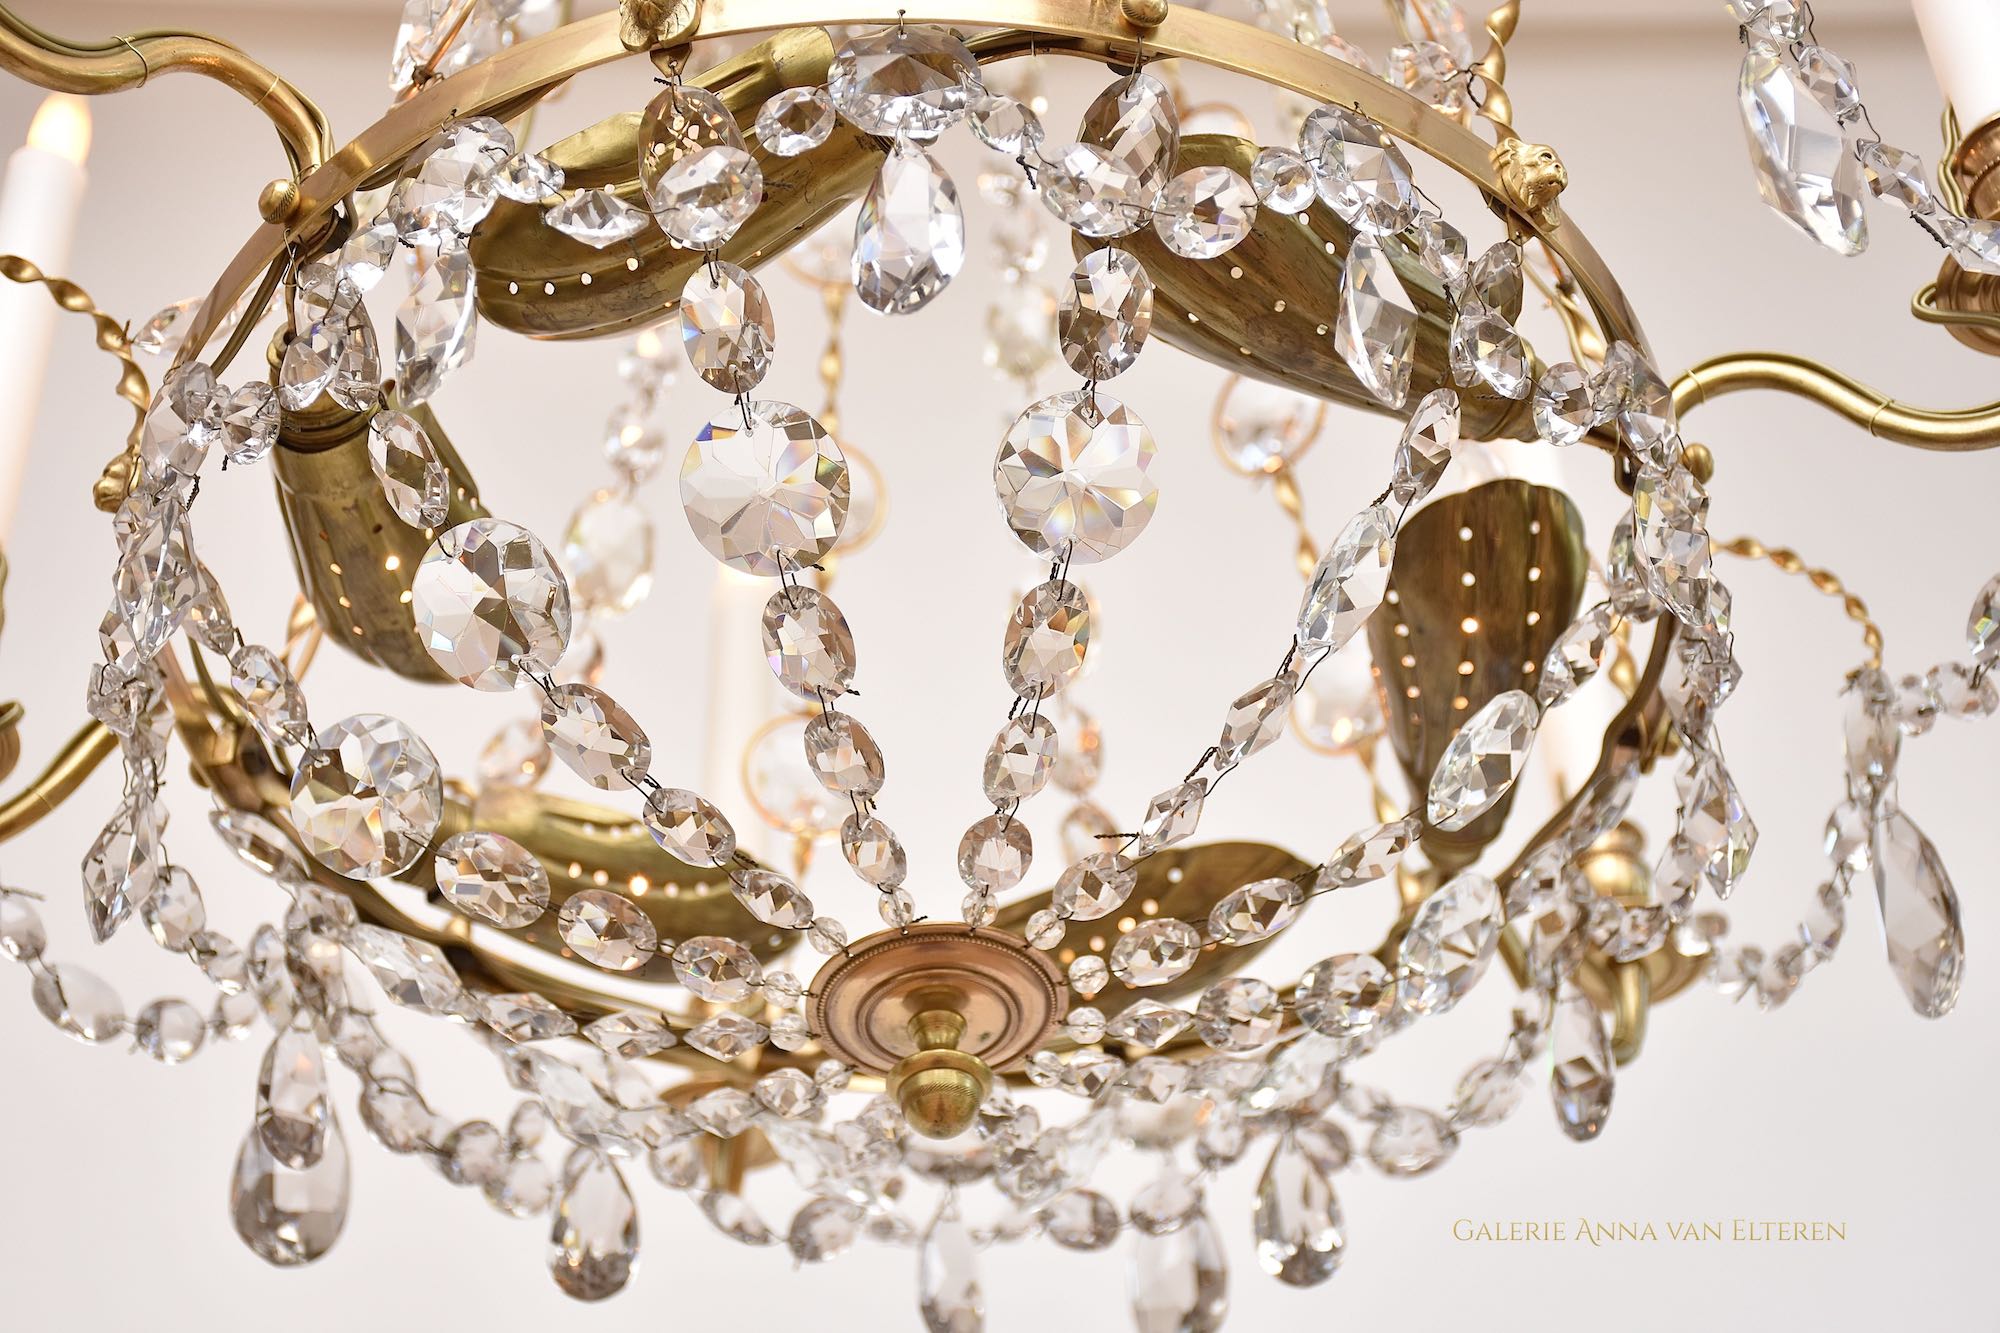 Two Swedish Gustavian style chandeliers